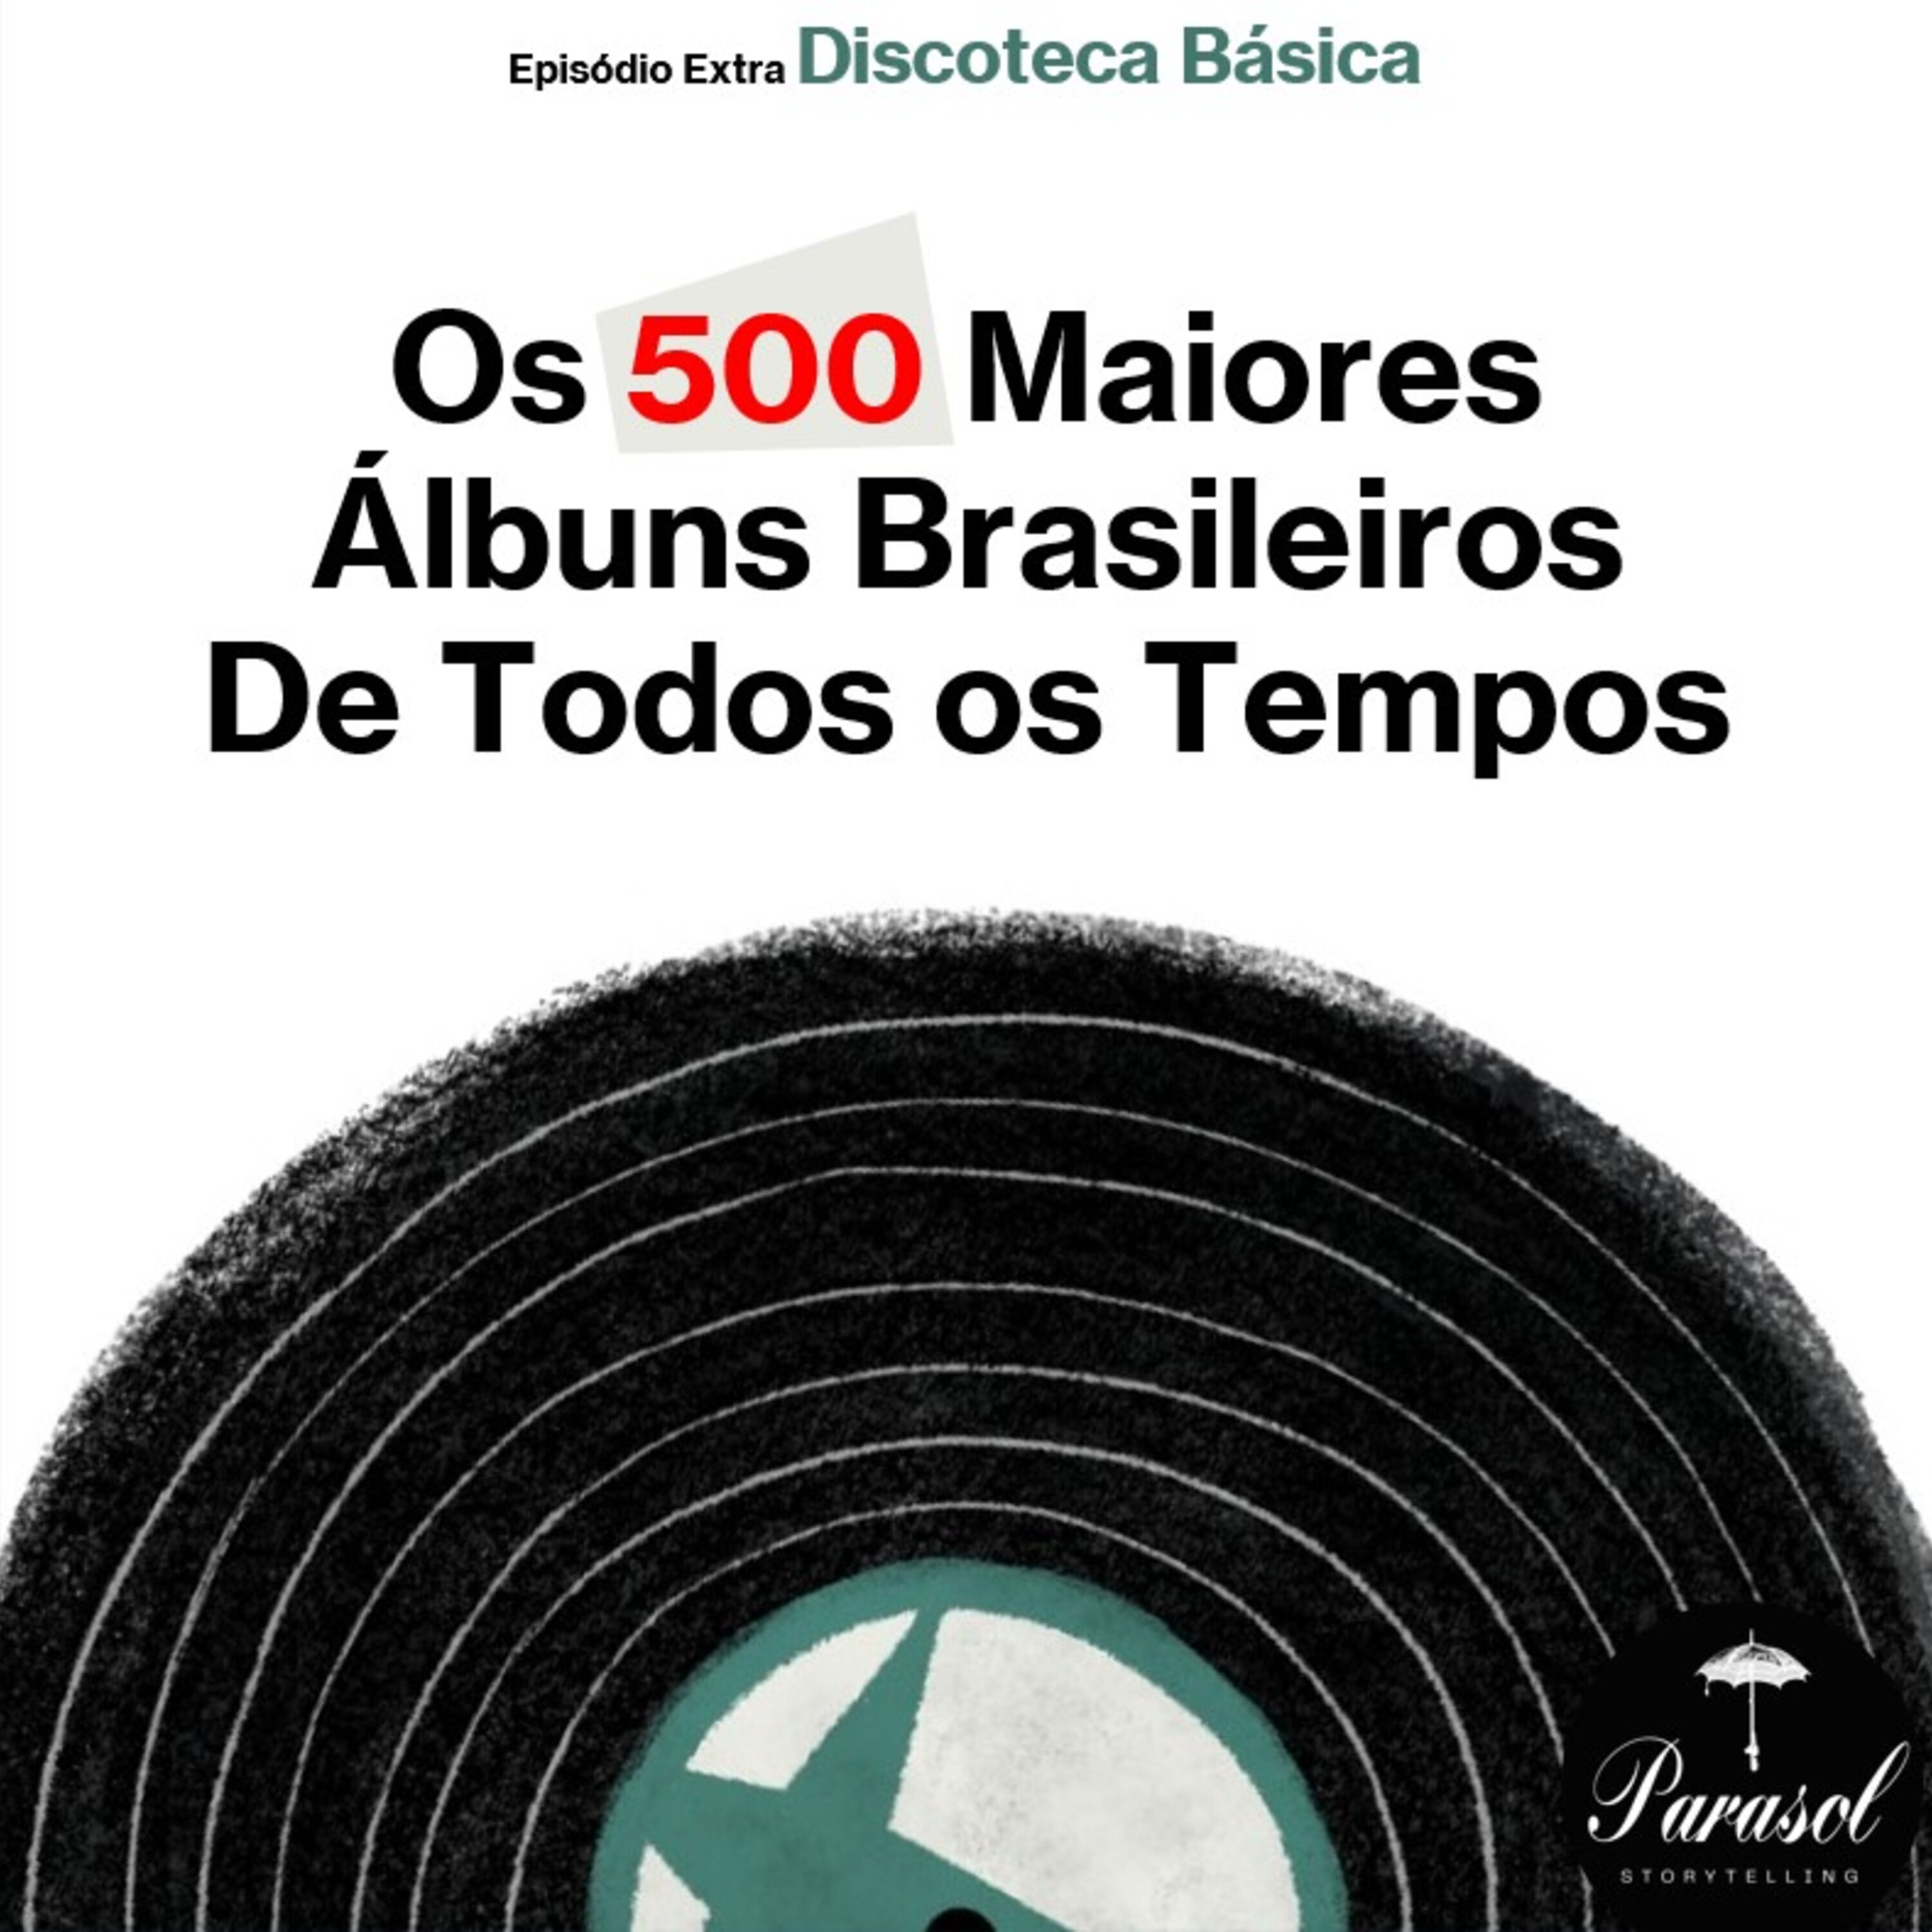 Episódio Extra: “Os 500 maiores álbuns brasileiros de todos os tempos” (Por trás do Projeto)